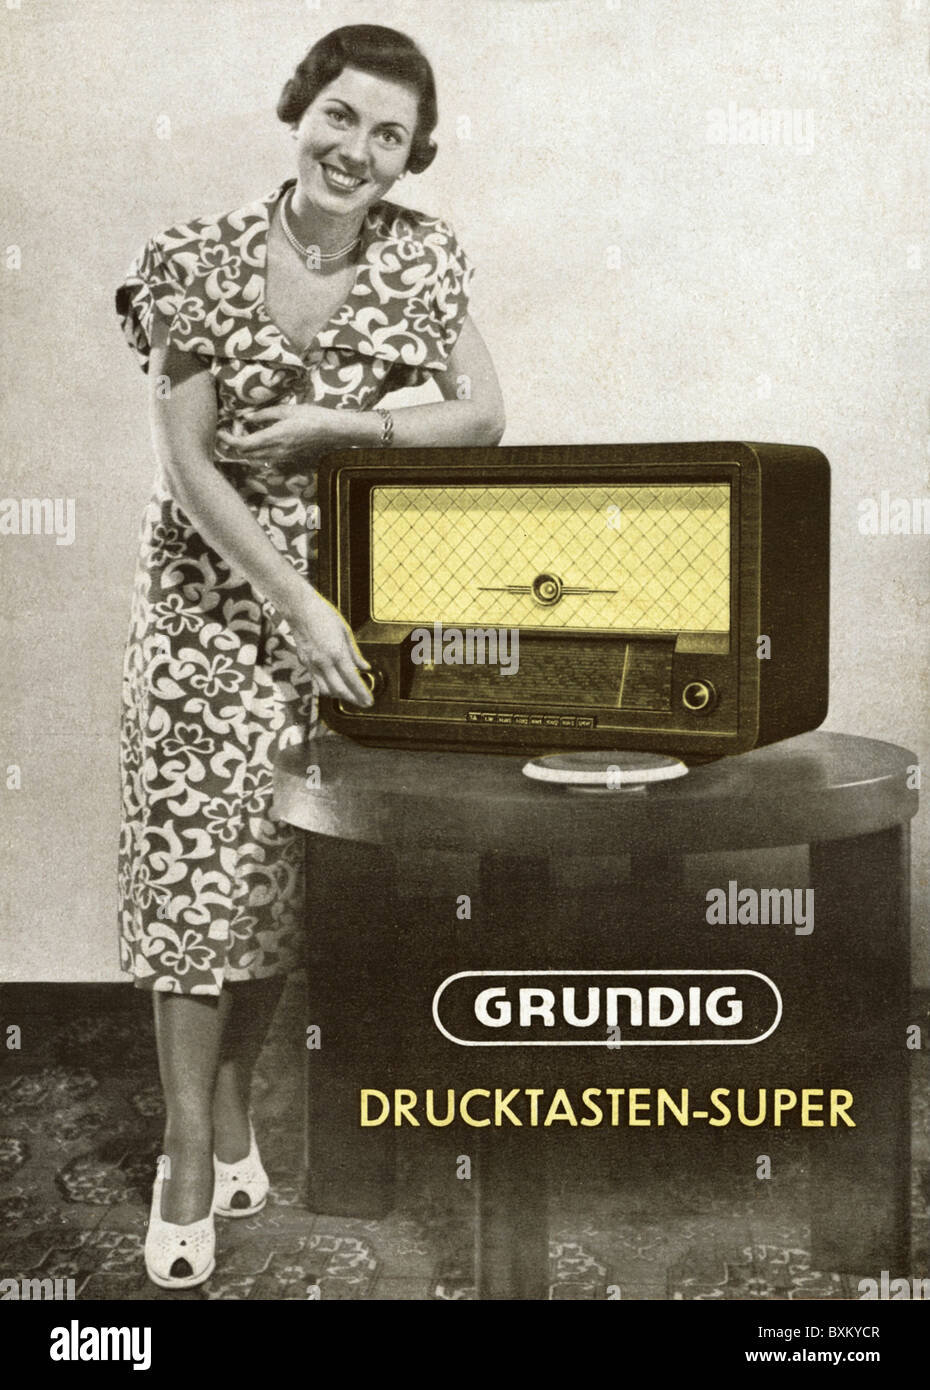 Diffusion, radio, Woman présente Grundig, prospectus, Allemagne, 1950, droits additionnels-Clearences-non disponible Banque D'Images